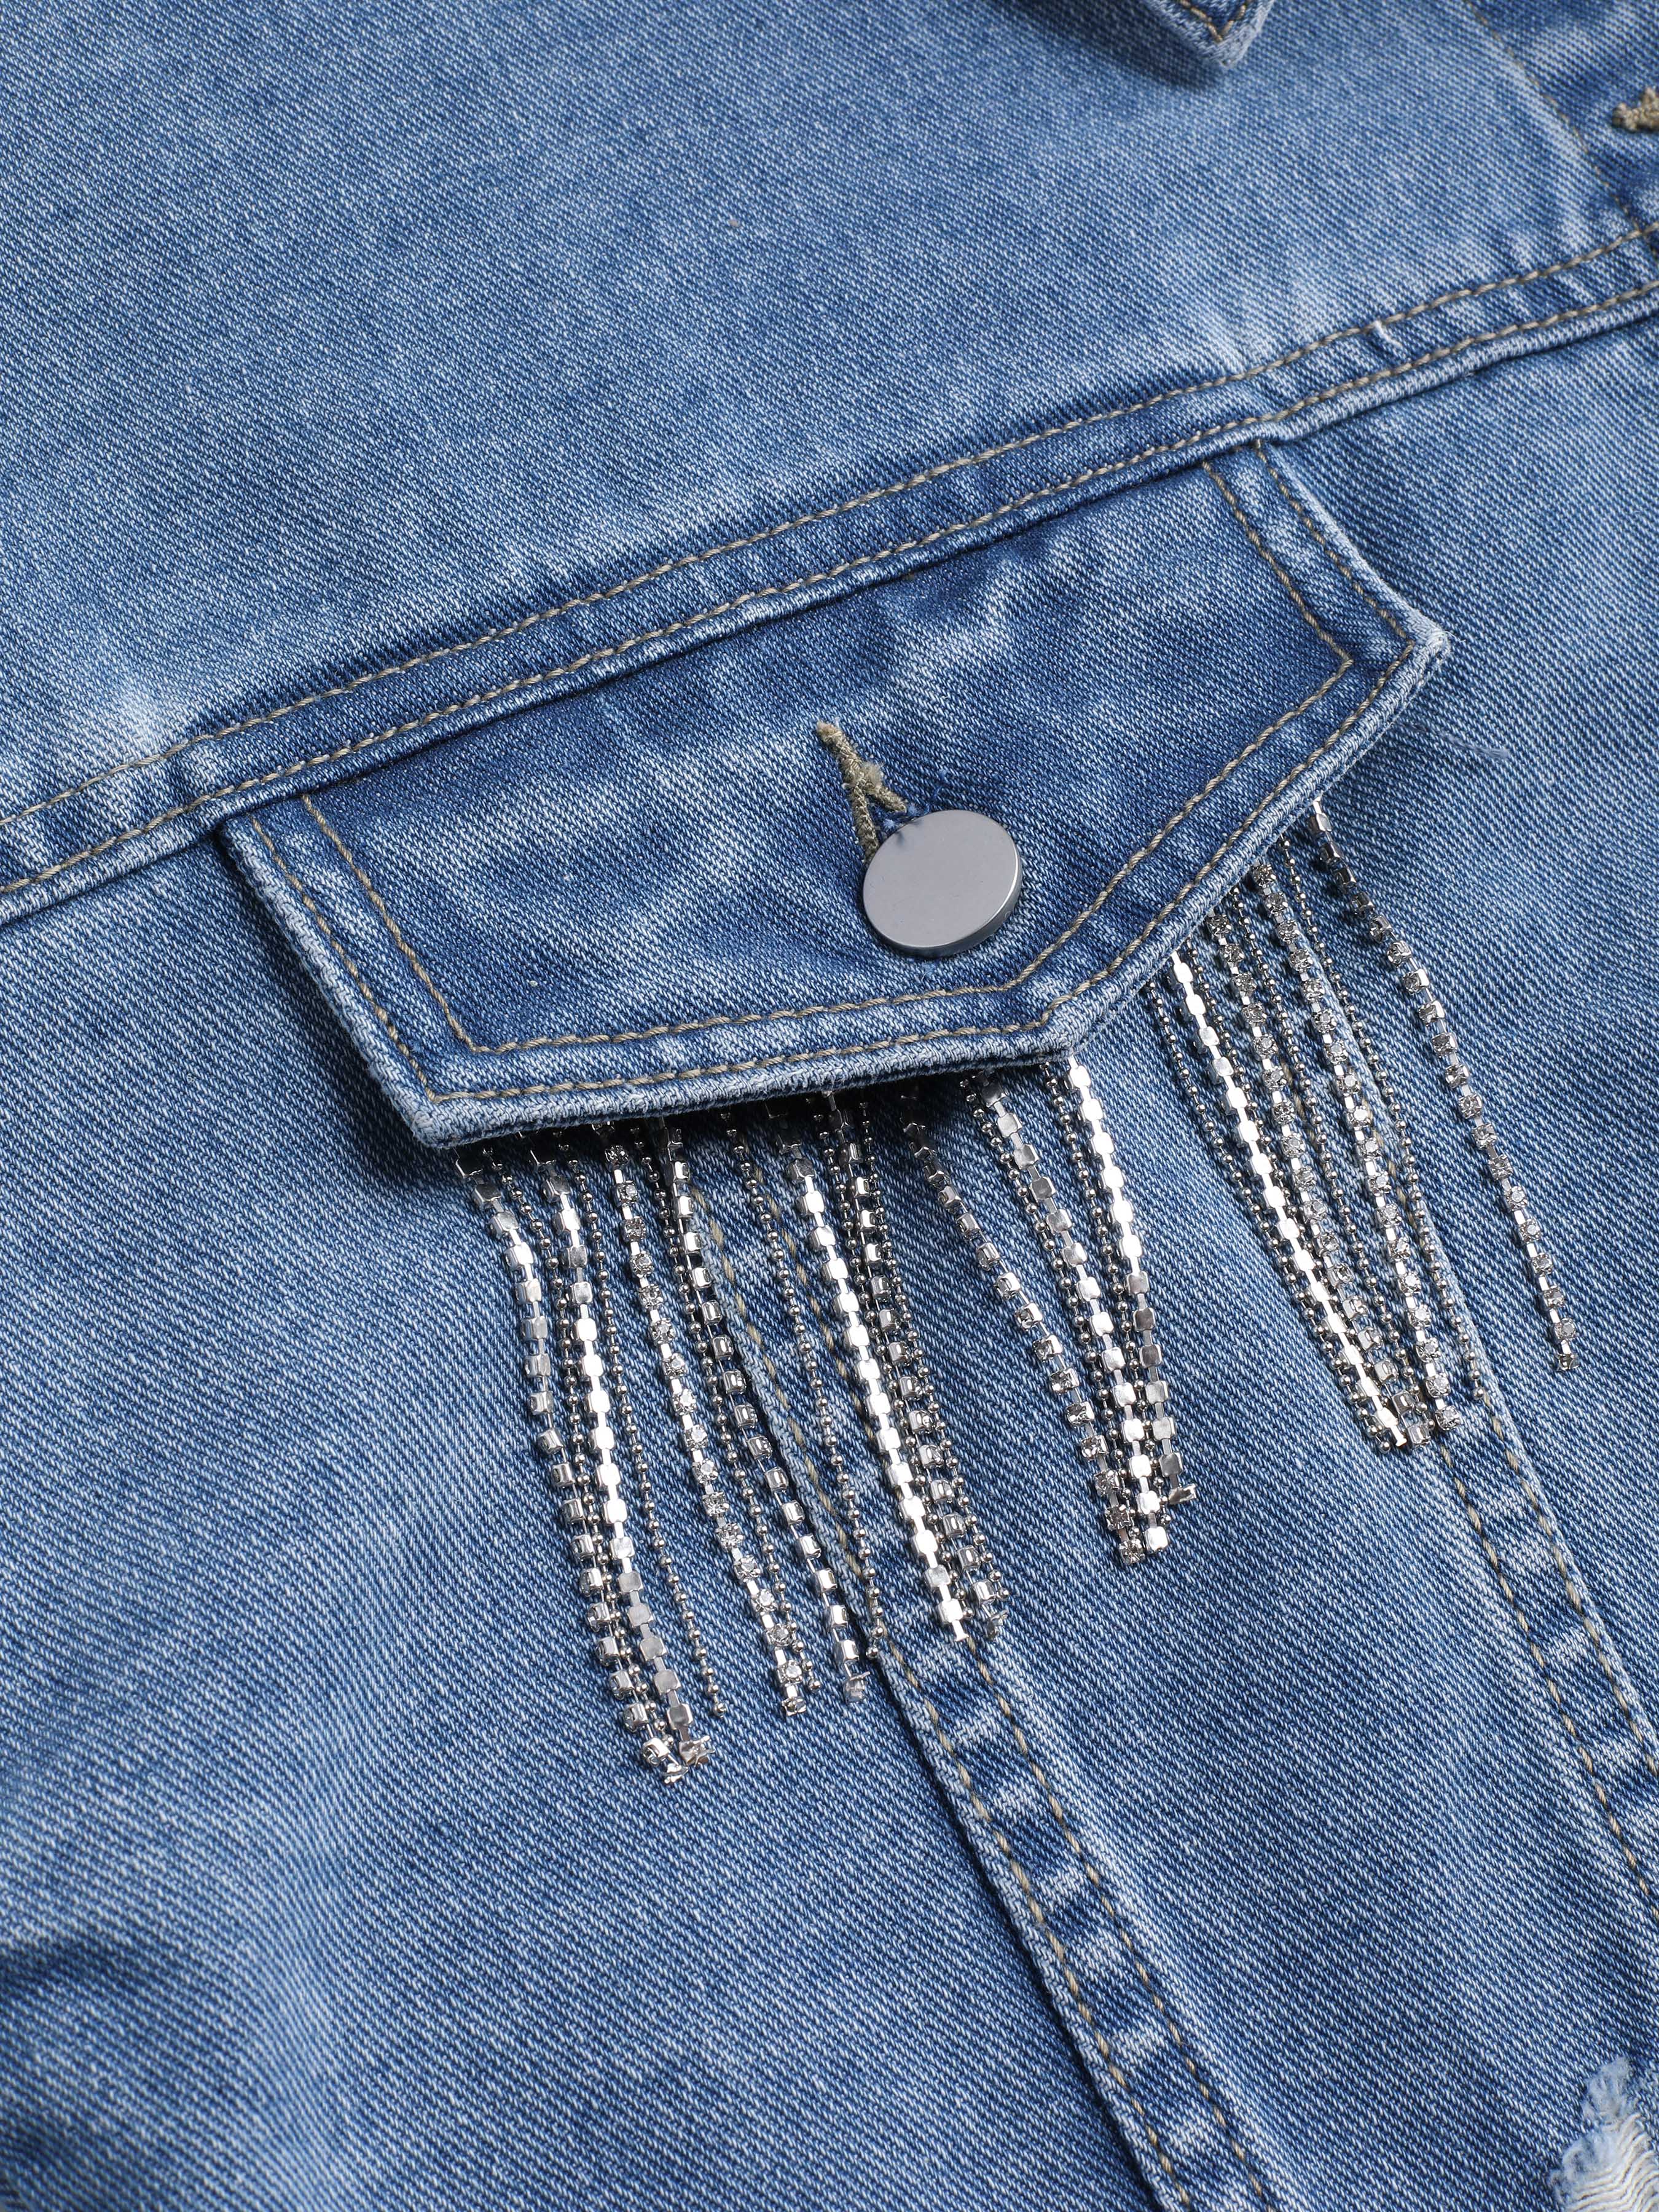 FAE - Veste en jean courte avec frange à strass - Bleu délavé